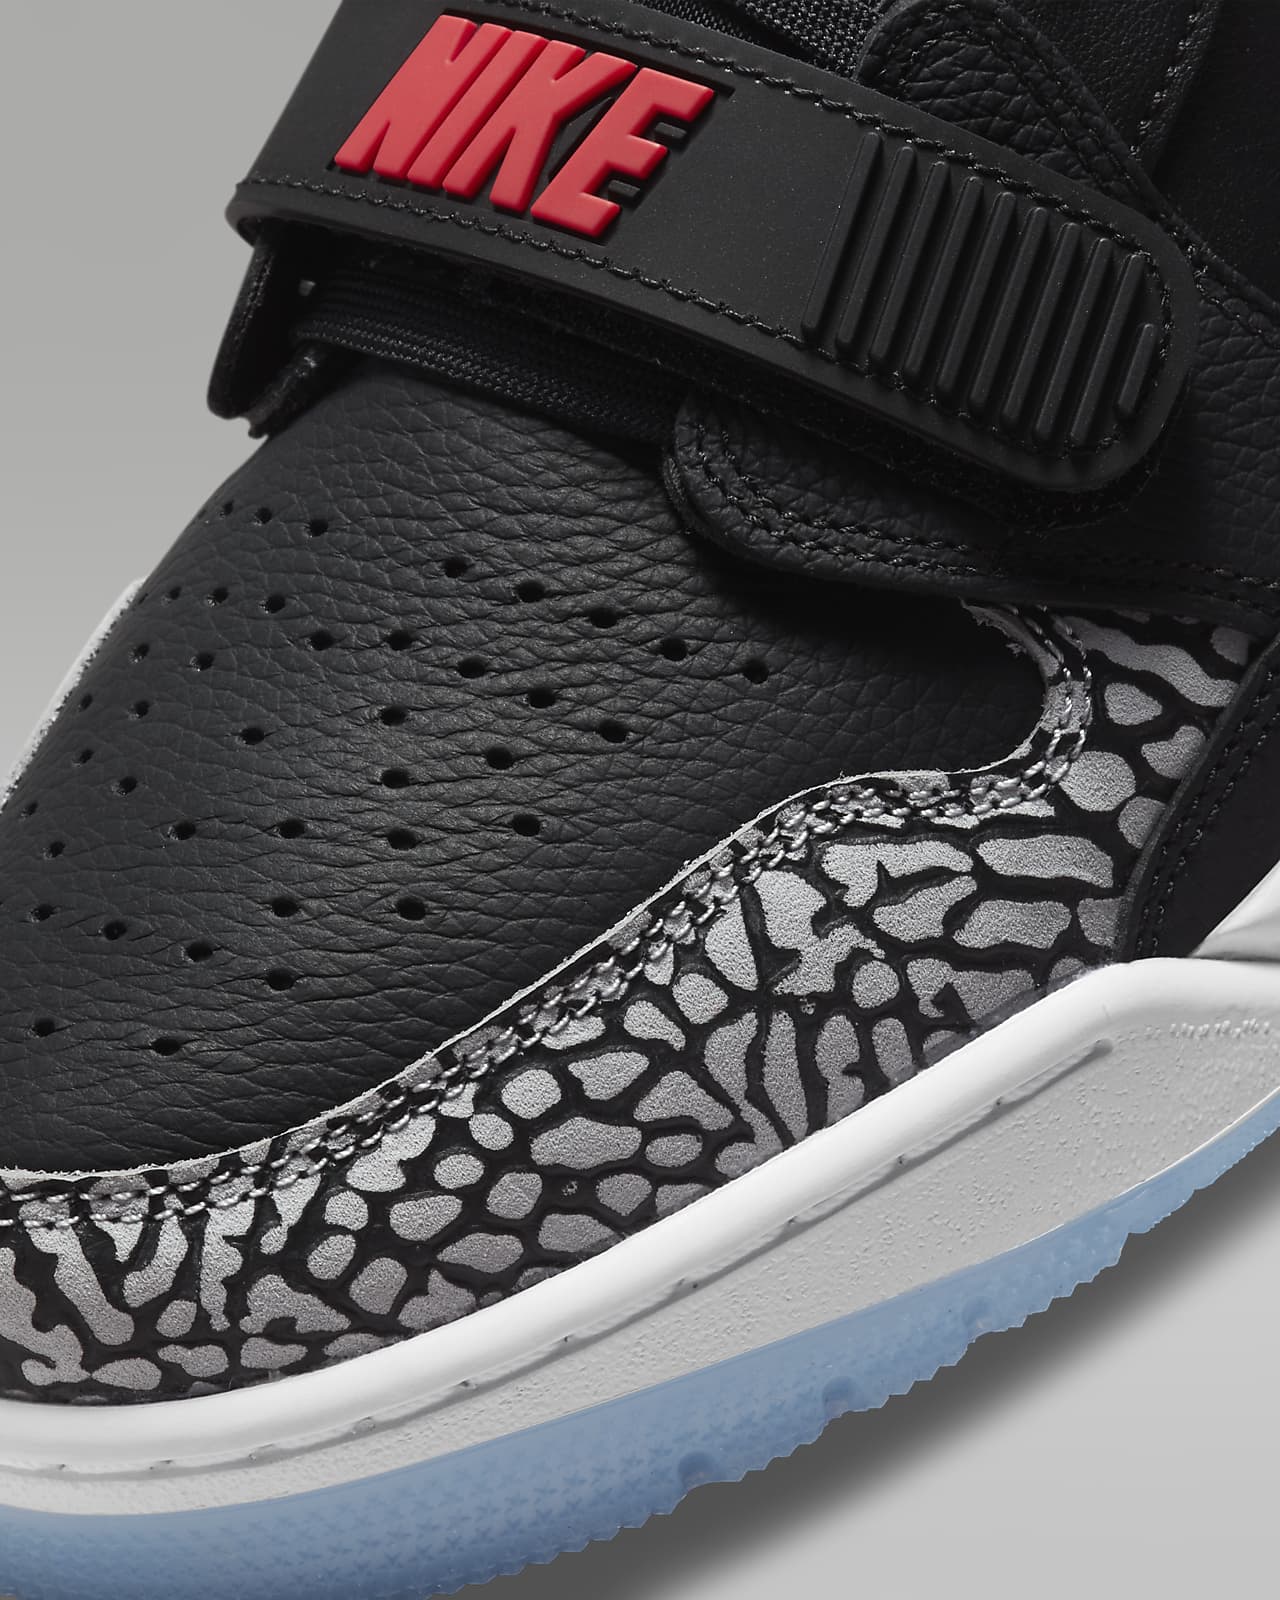 Air Jordan Legacy 312 Low Men's Shoes. Nike.com